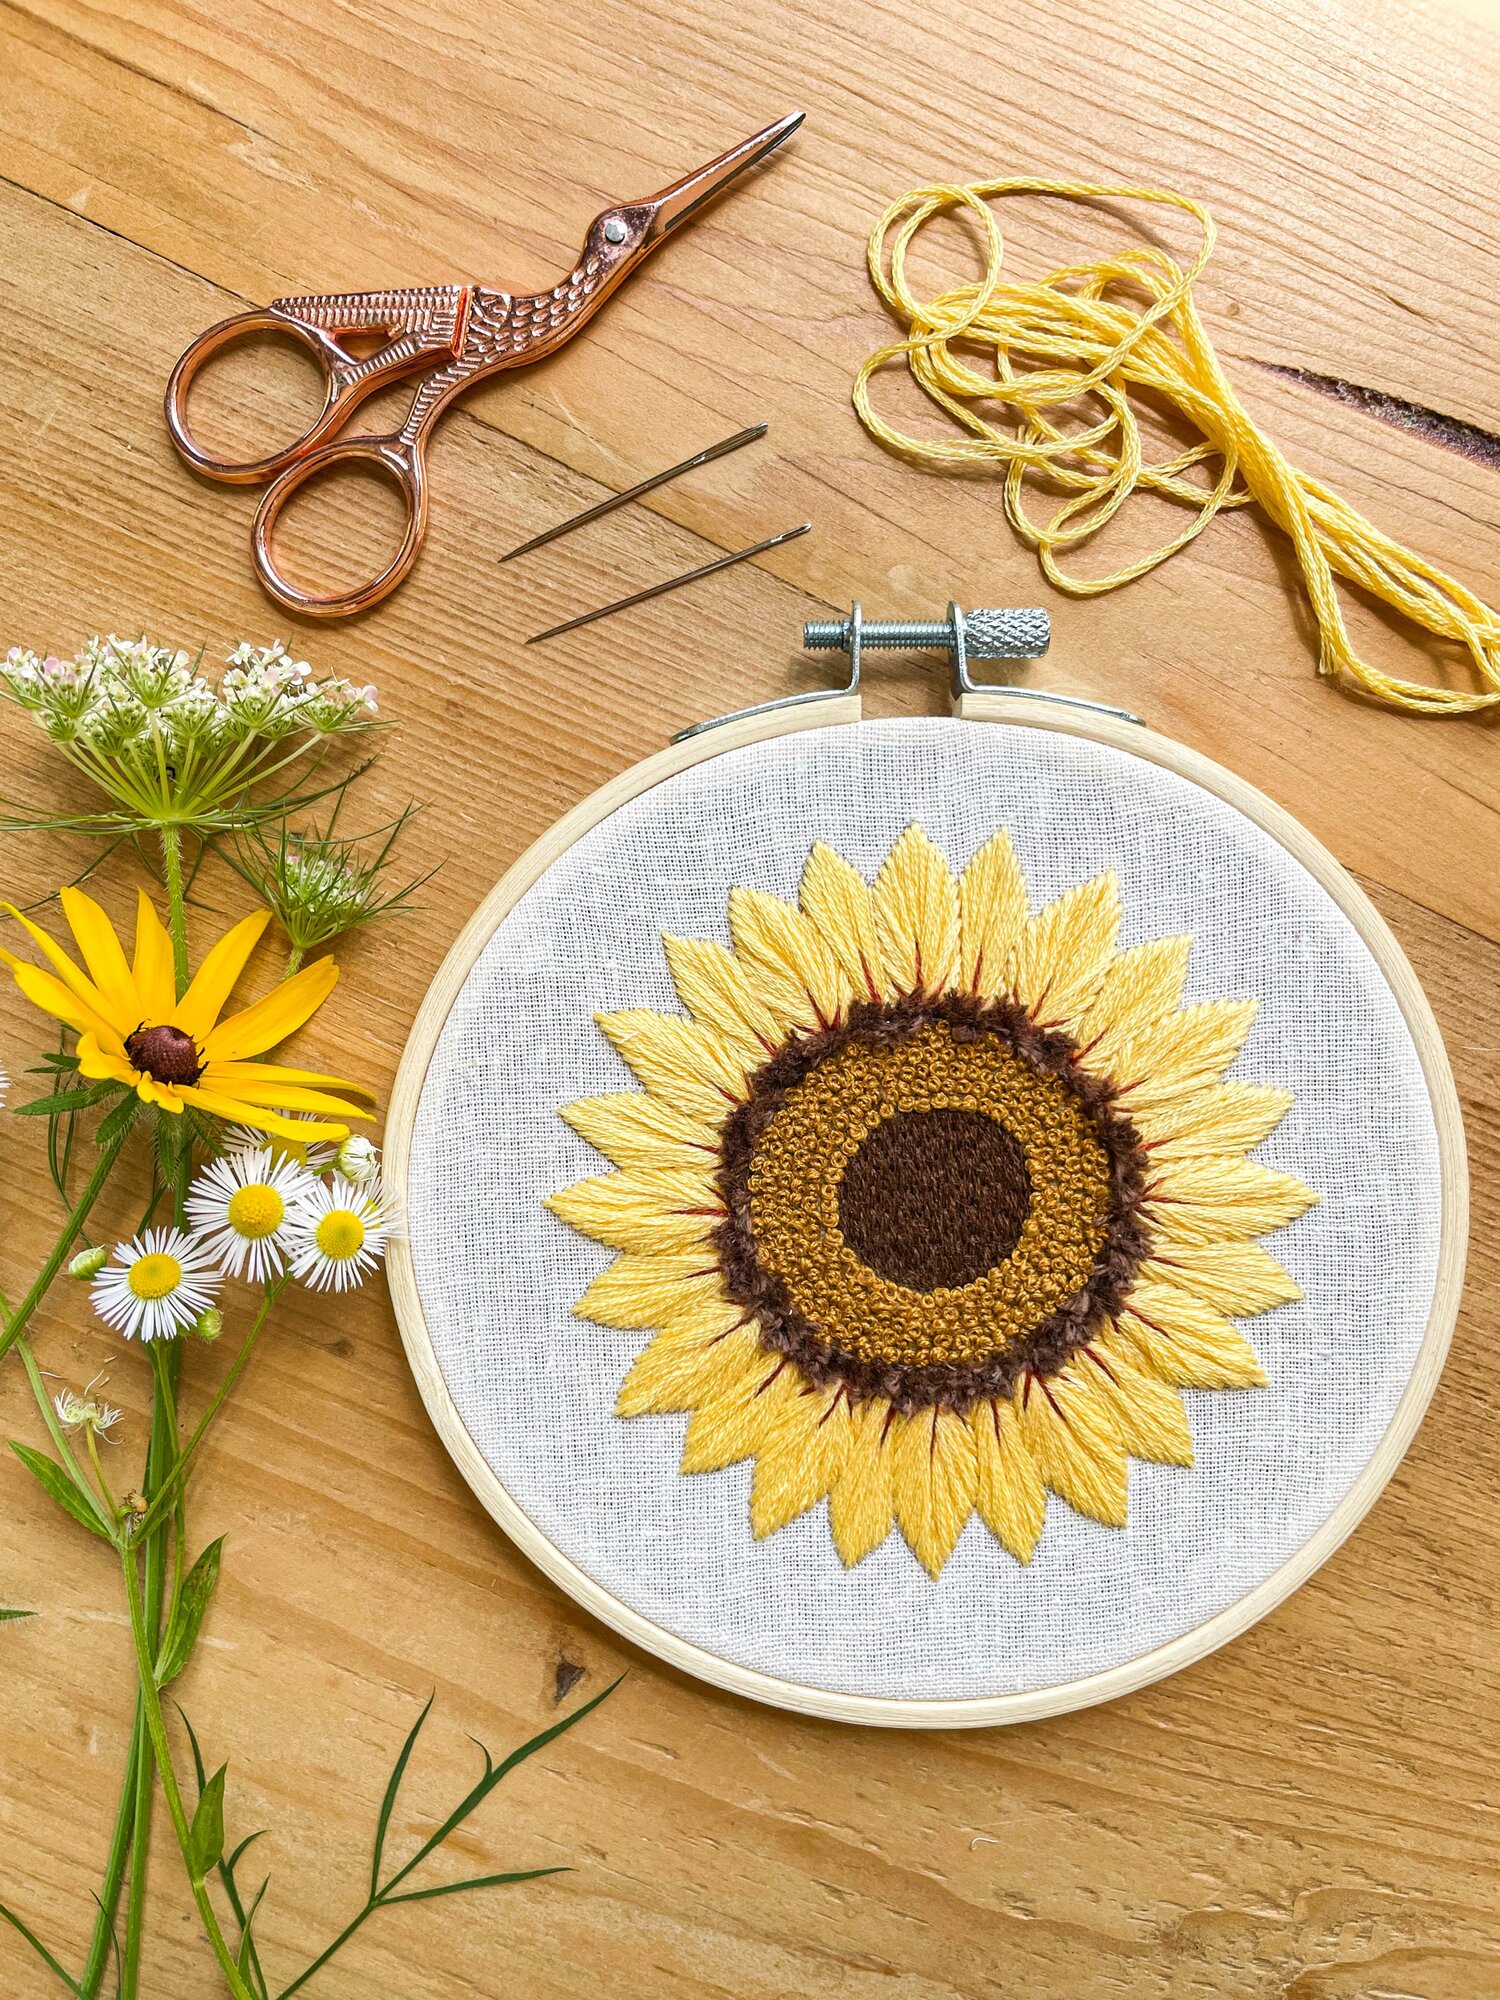 Beginner Cross Stitch Kit Sunflower Easy Embroidery Kit for Kids